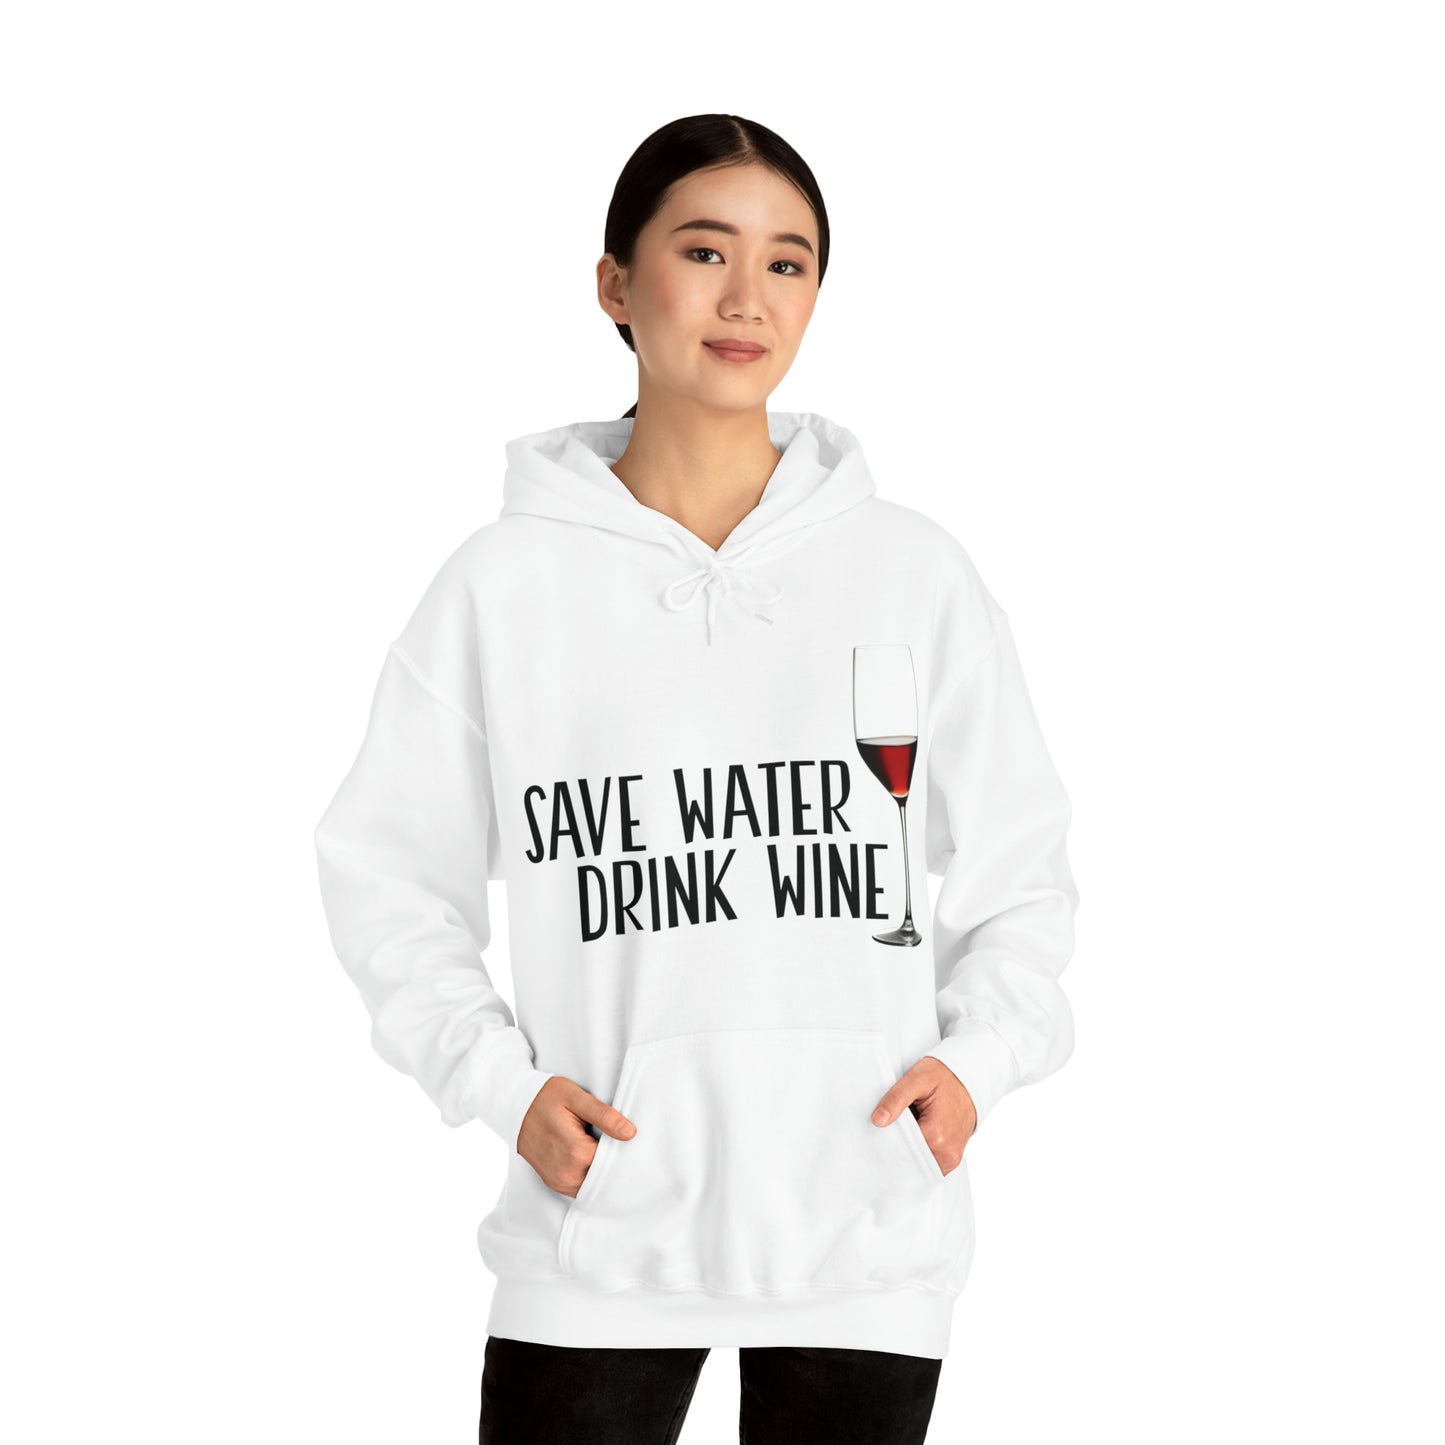 Save Water Drink Wine Hooded Sweatshirt